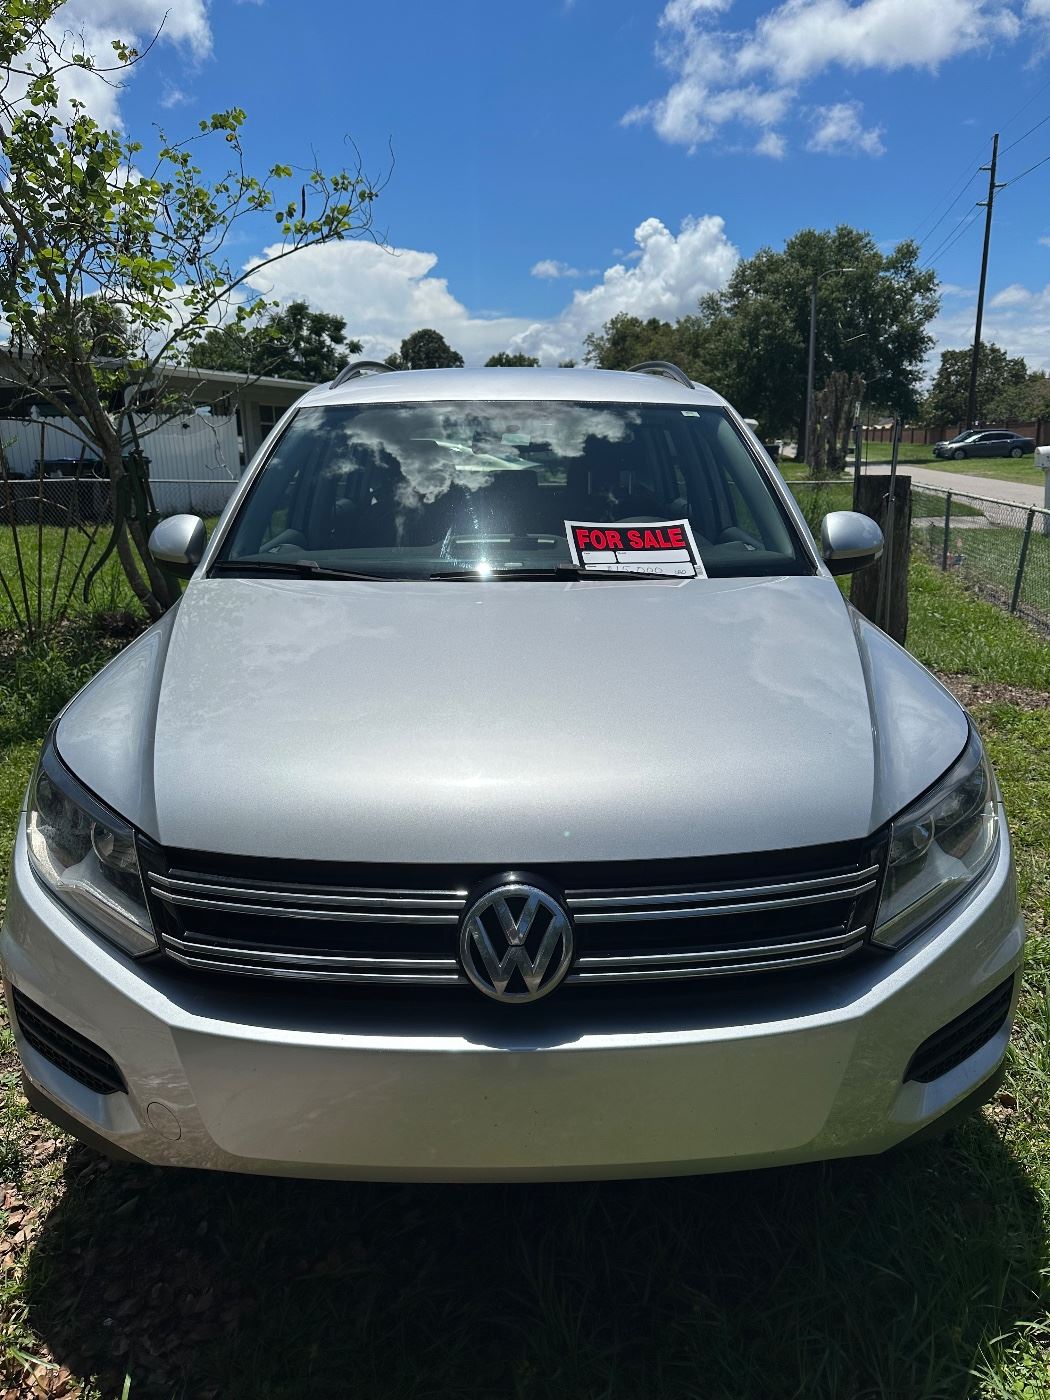 2015 Volkswagen Tijuan, 55,000 miles, excellent condition, $15,000 OBO. 